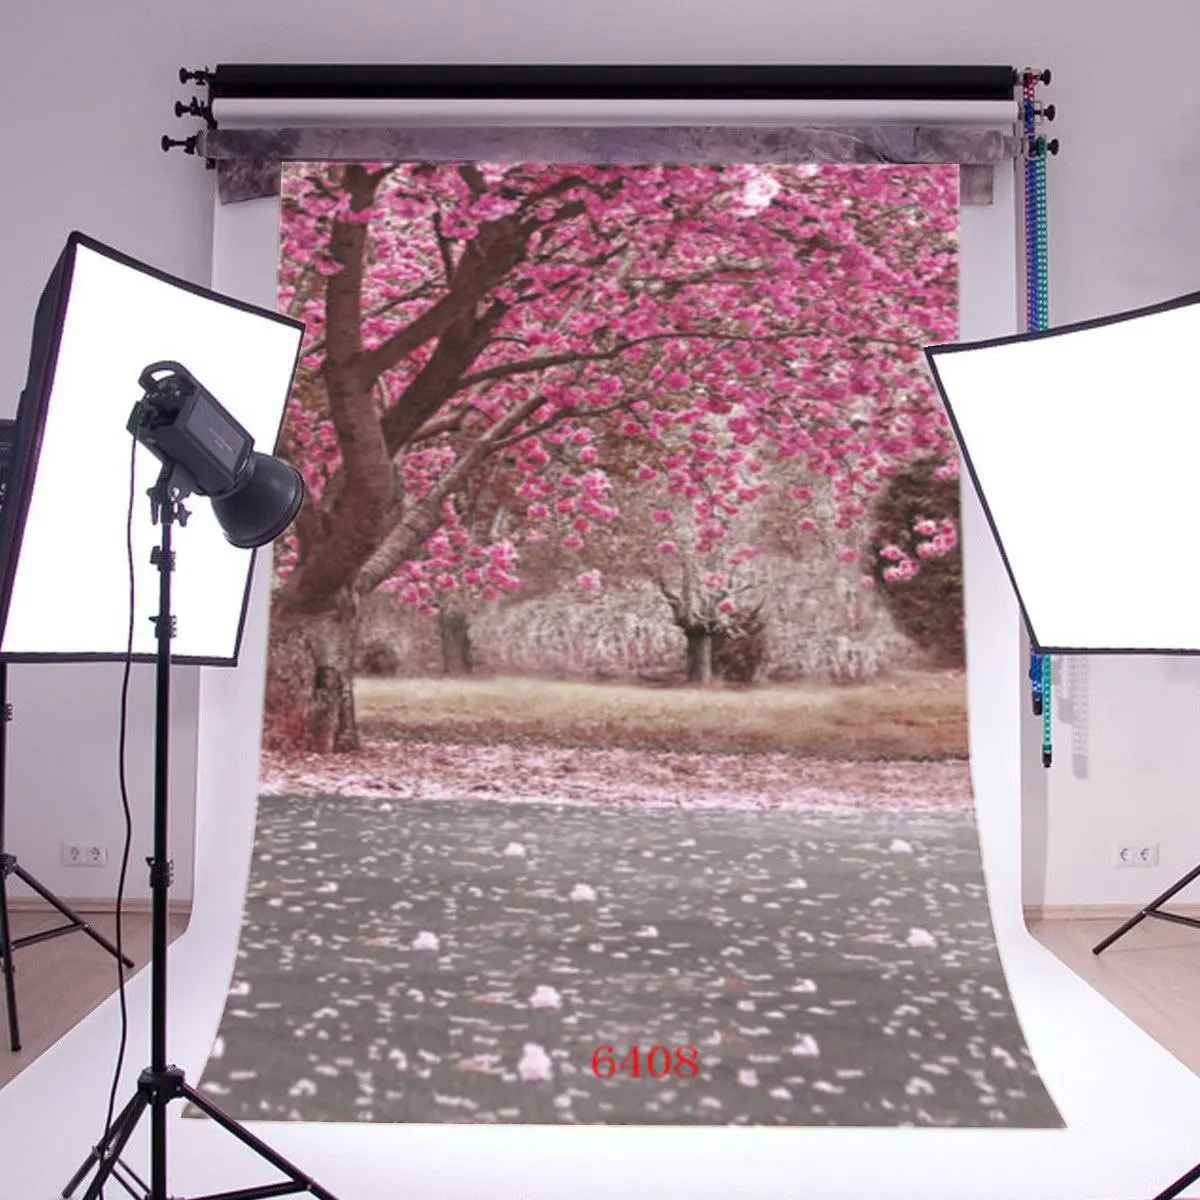 

Фон для фотосъемки с изображением сельского цветка вишни сцены Дня Святого Валентина детей малышей влюбленных портретов